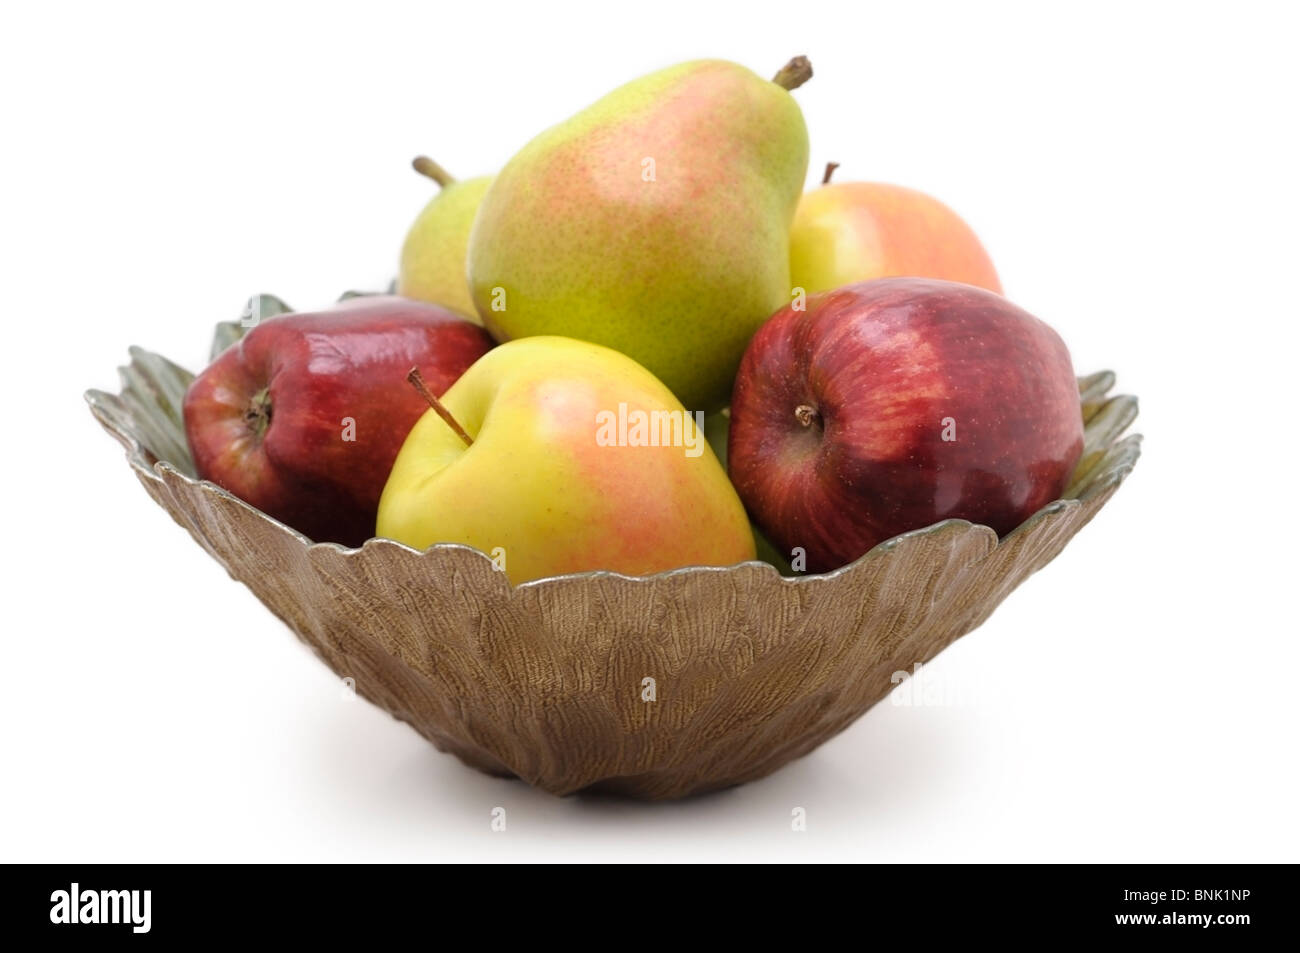 Schale mit Obst - Äpfel und Birnen Stockfoto